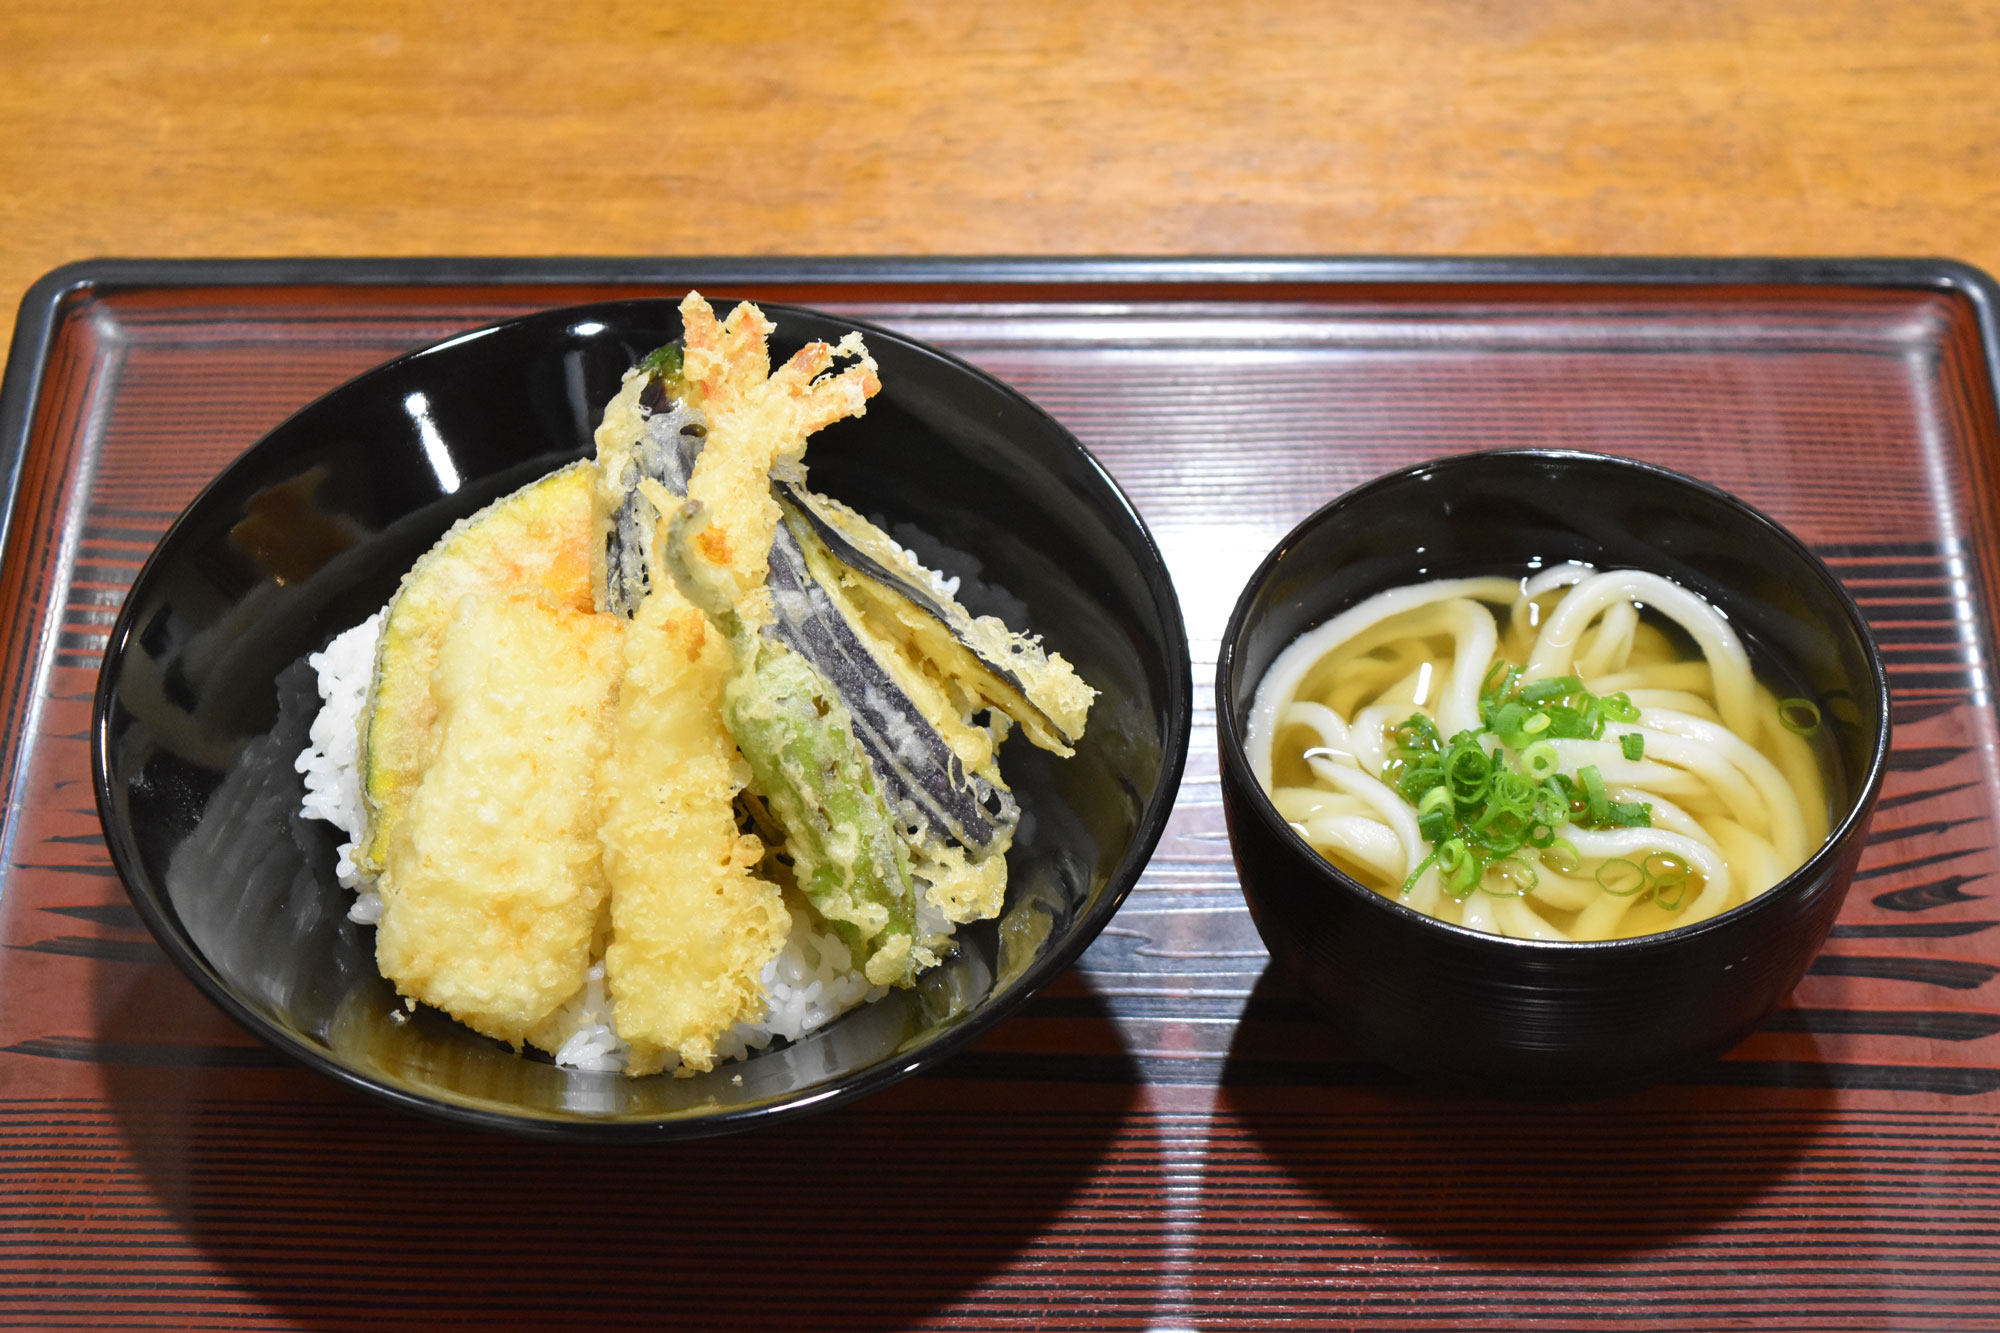 かぼちゃ、なす、イカ、エビ、シシトウの天ぷらが乗った天丼に、ミニうどんが付いた「うどん屋の天丼（900円）」